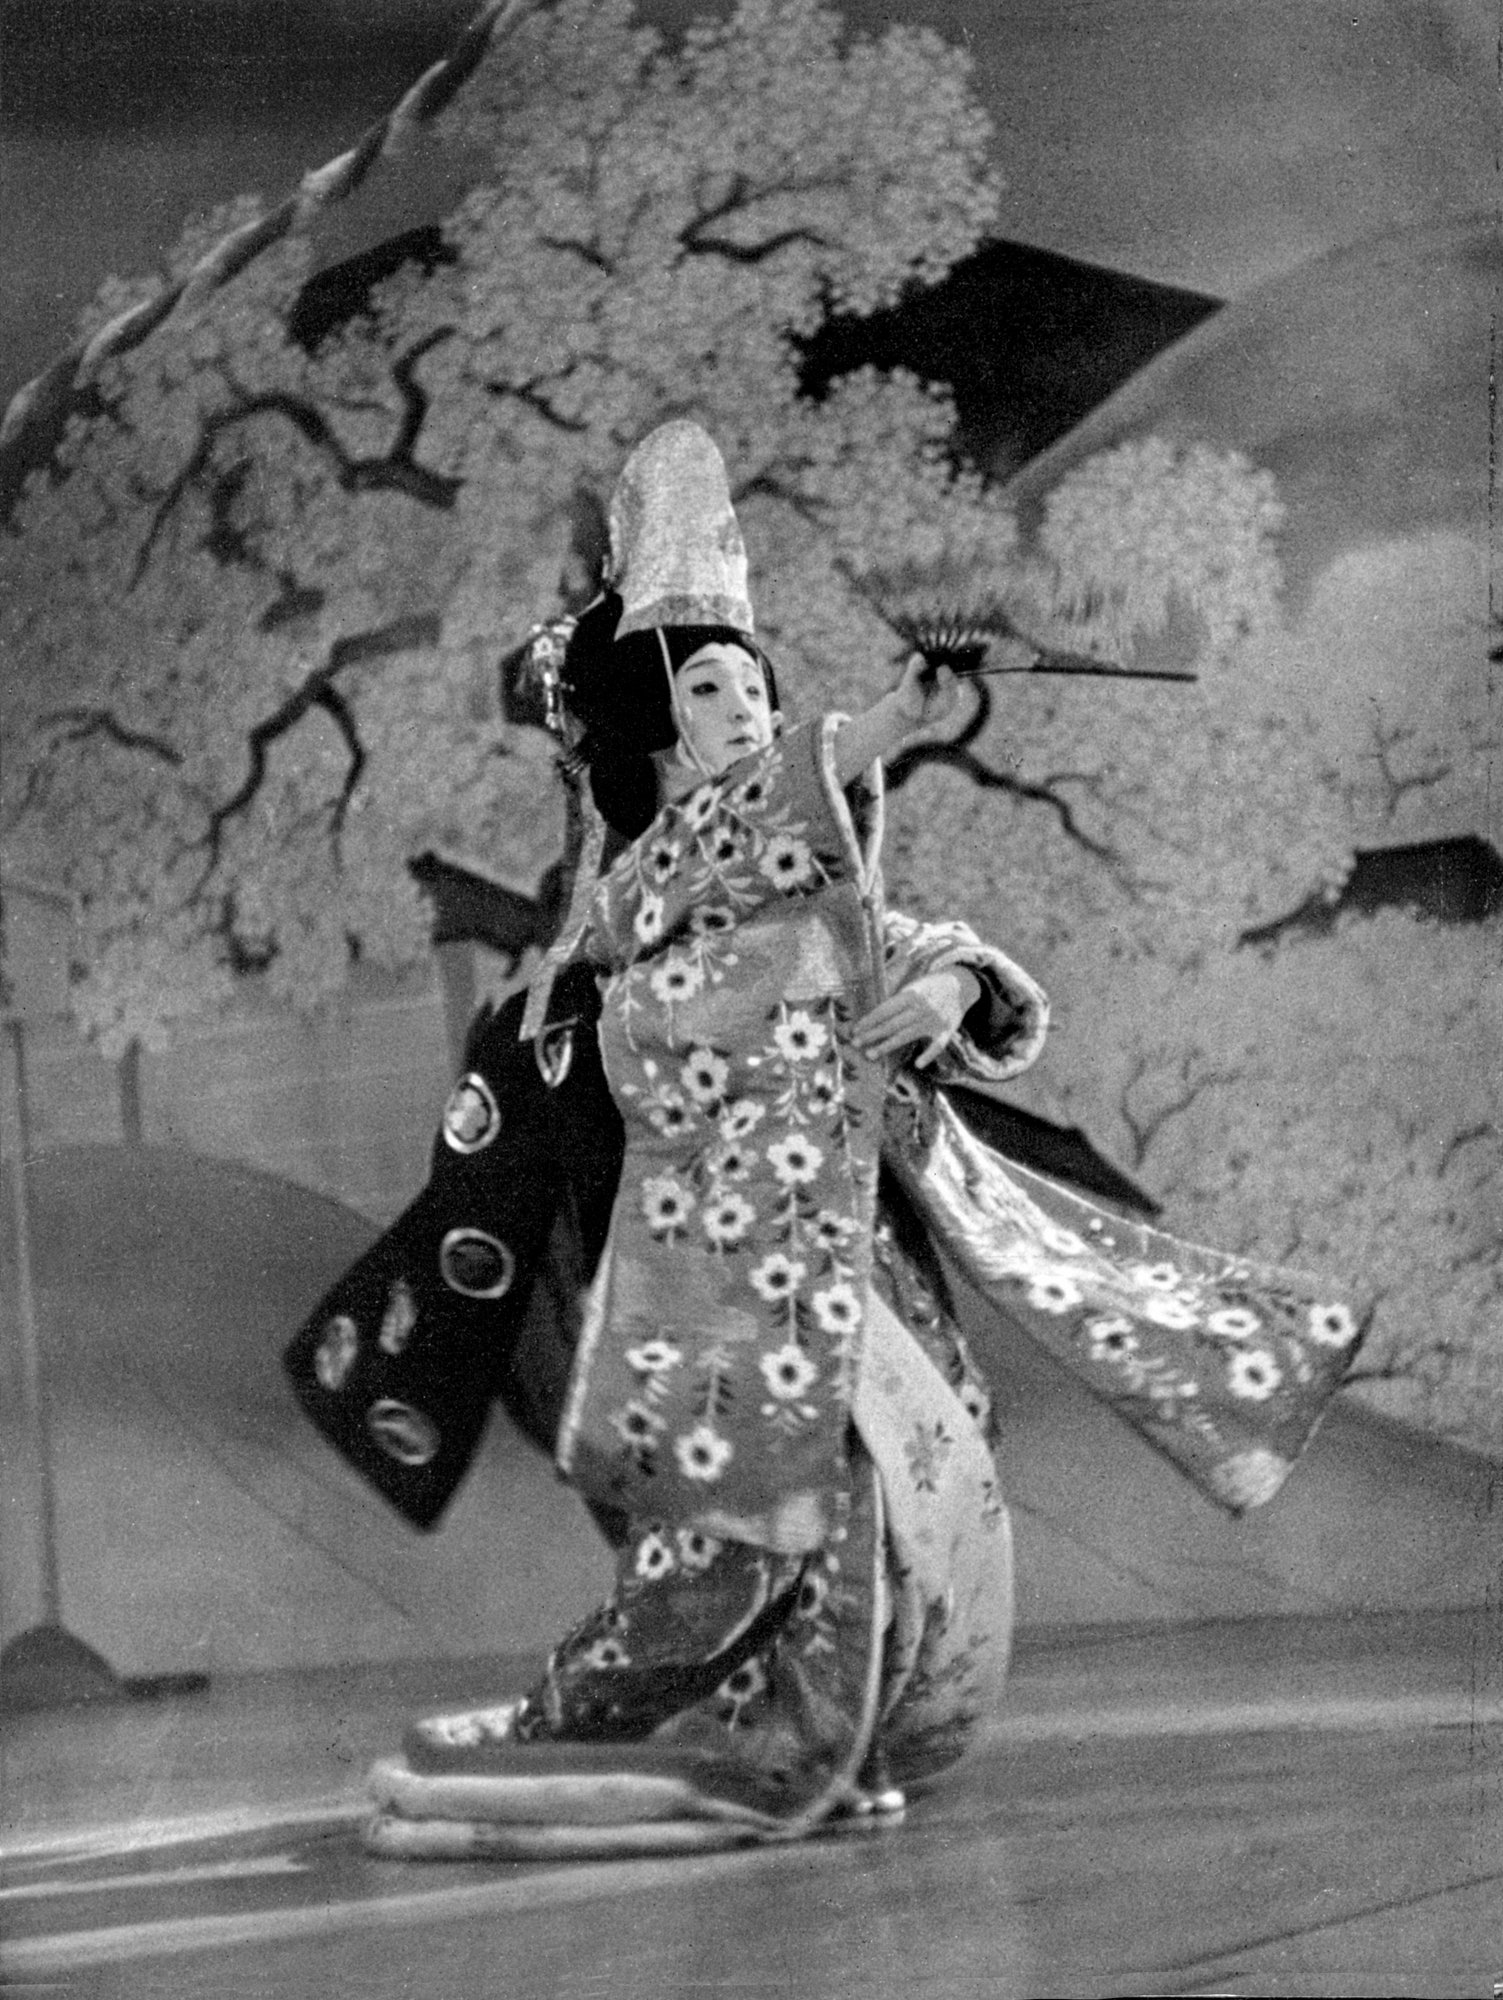 Kimura - Kabuki Dancer, 1937. Xenon 5cm/1.5, wide open.